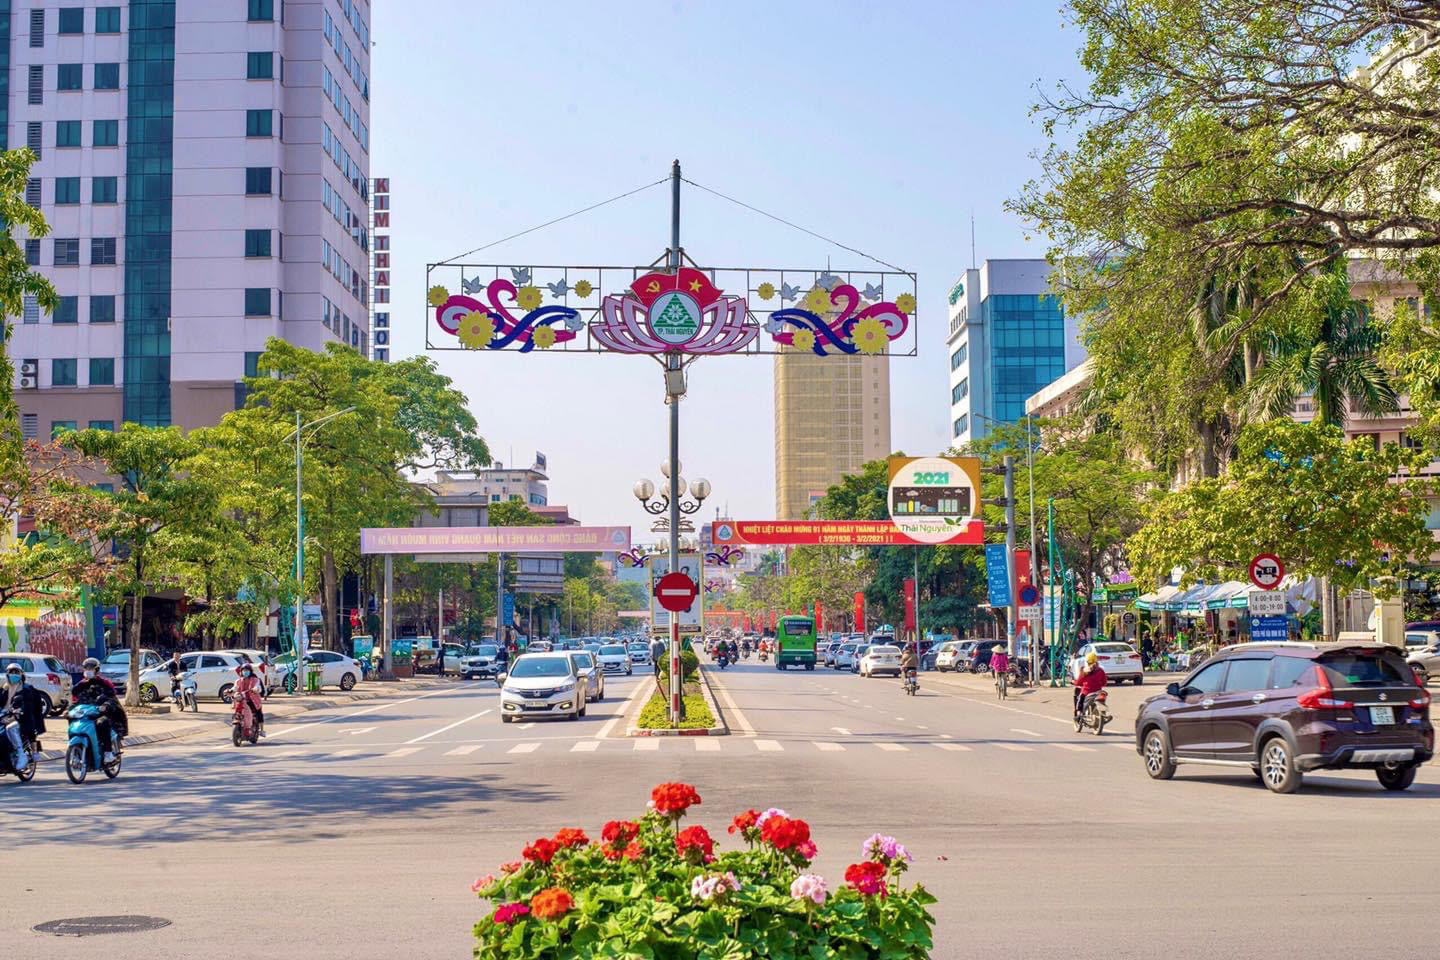 Thông báo kết quả kiểm tra sát hạch xét chuyển công chức cấp xã thành công chức thuộc UBND thành phố Thái Nguyên